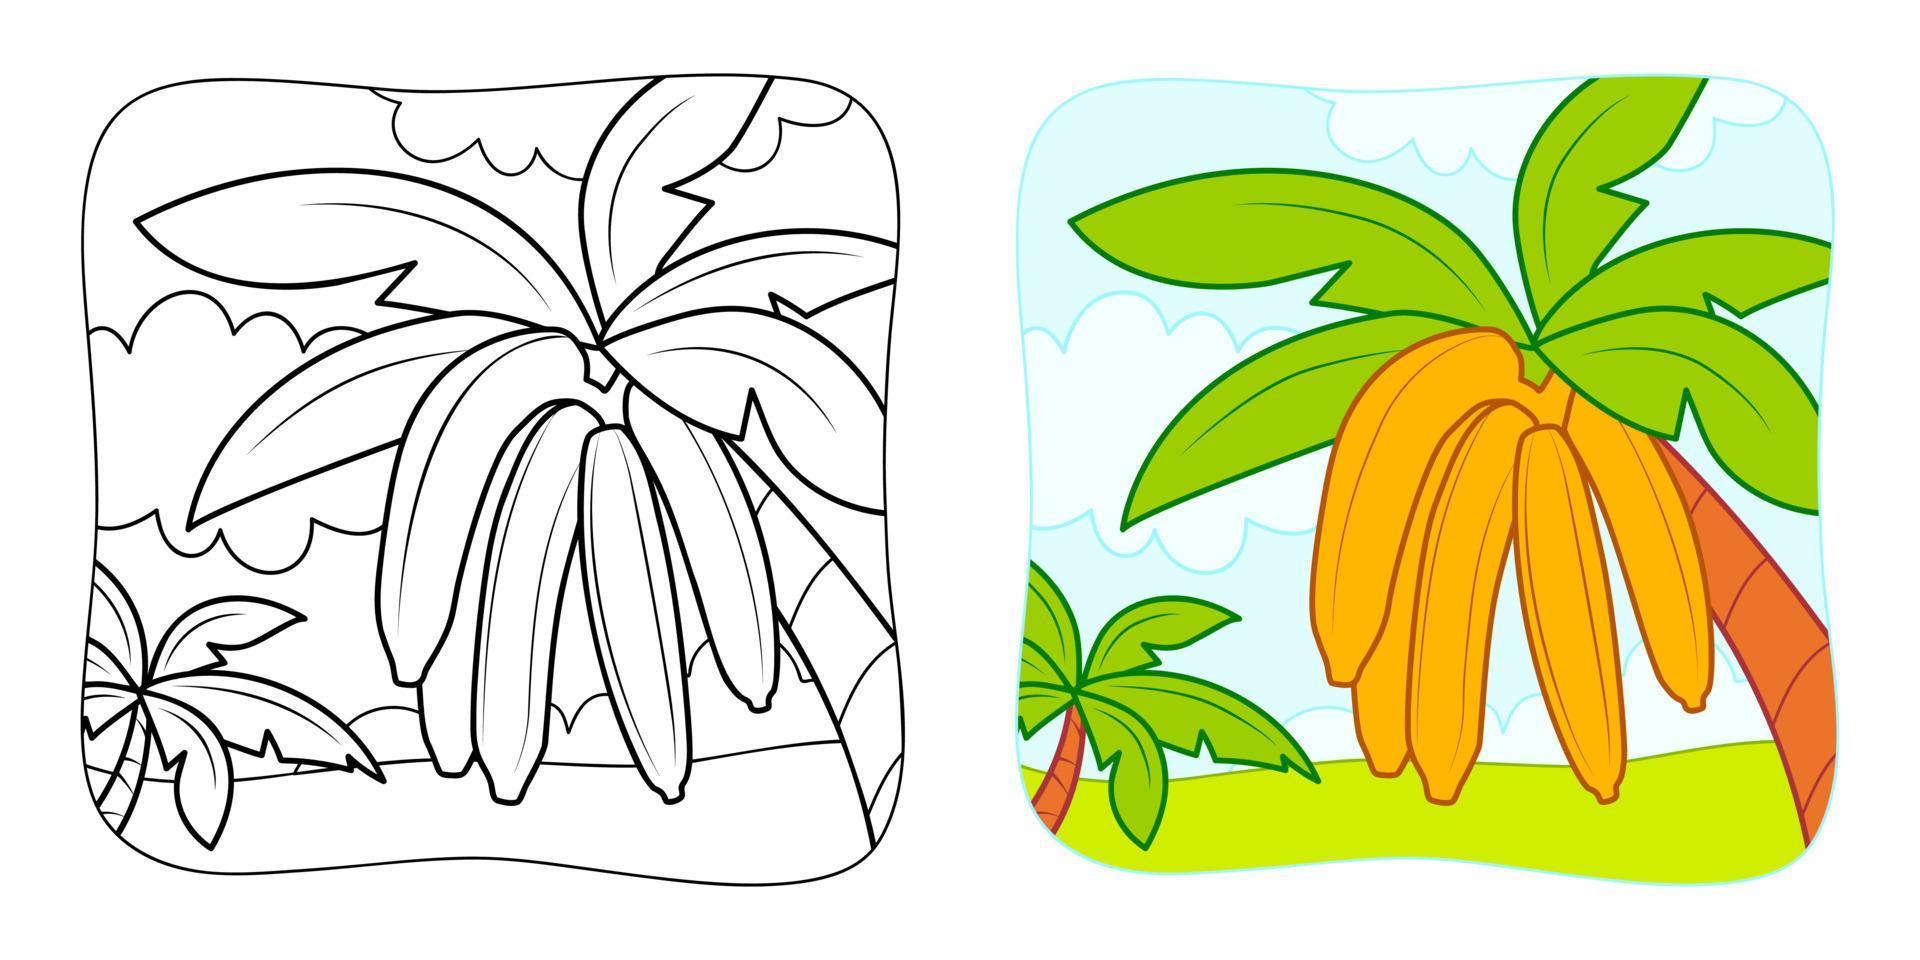 libro da colorare o pagina da colorare per bambini. clipart di illustrazione vettoriale di banane. sfondo della natura.